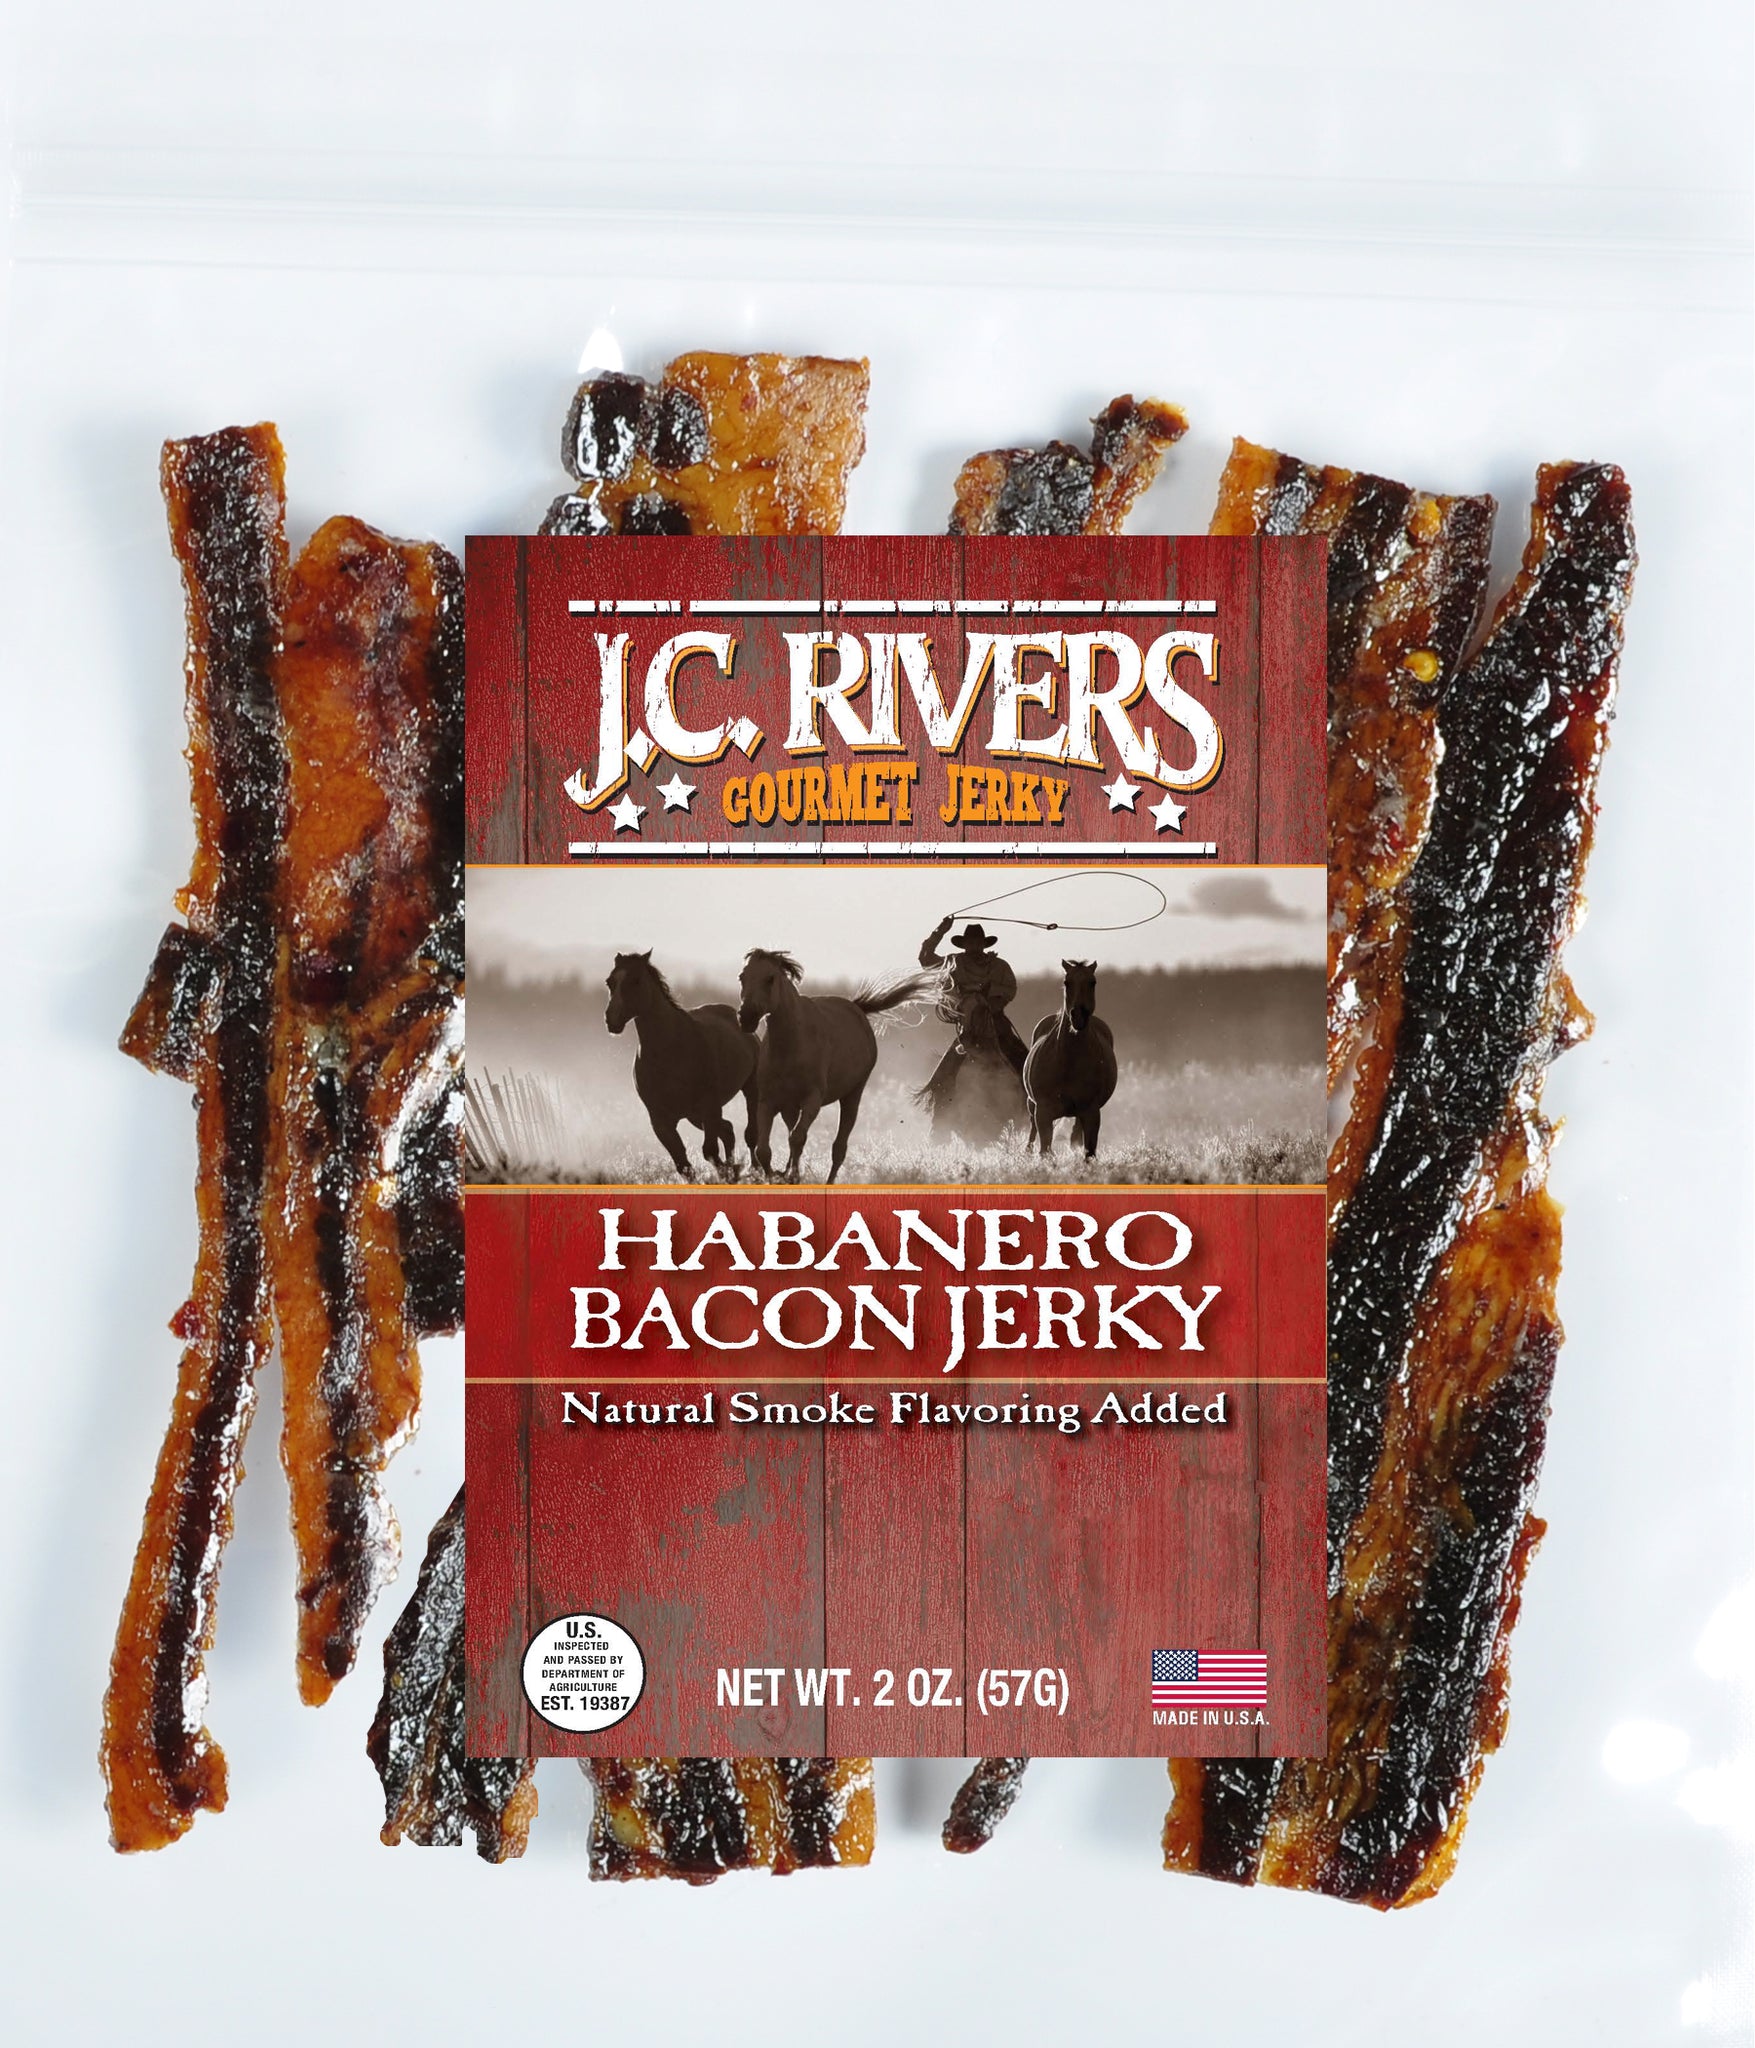 Habanero Bacon Jerky